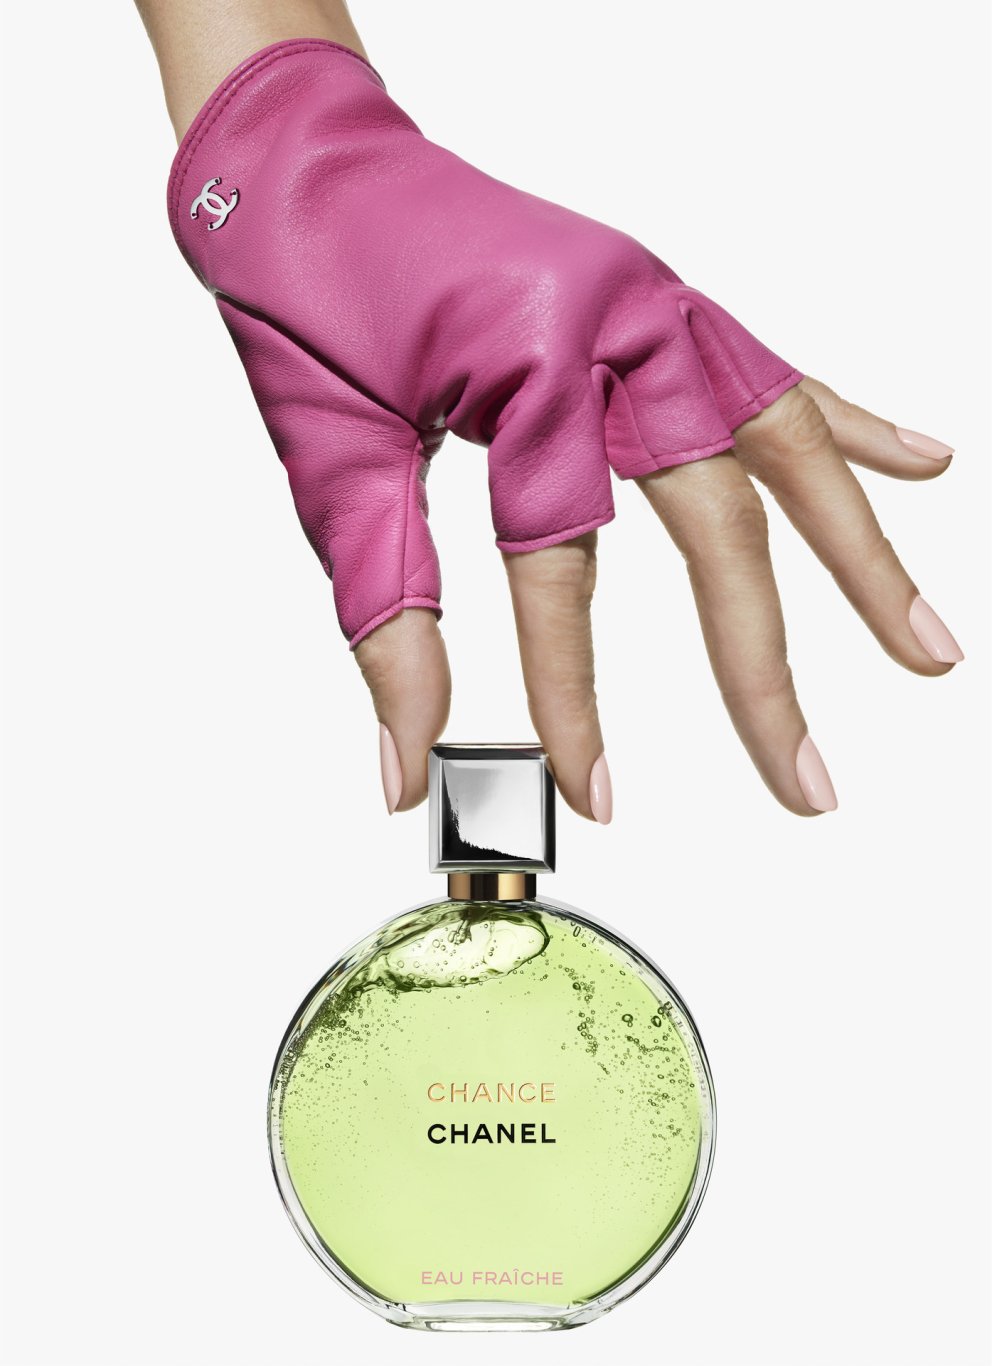 Chanel var að koma á markað með nýjan og ferskan sítrusilm undir nafninu Chance sem mun án efa heilla nýja kynslóð Chanel-aðdáenda.